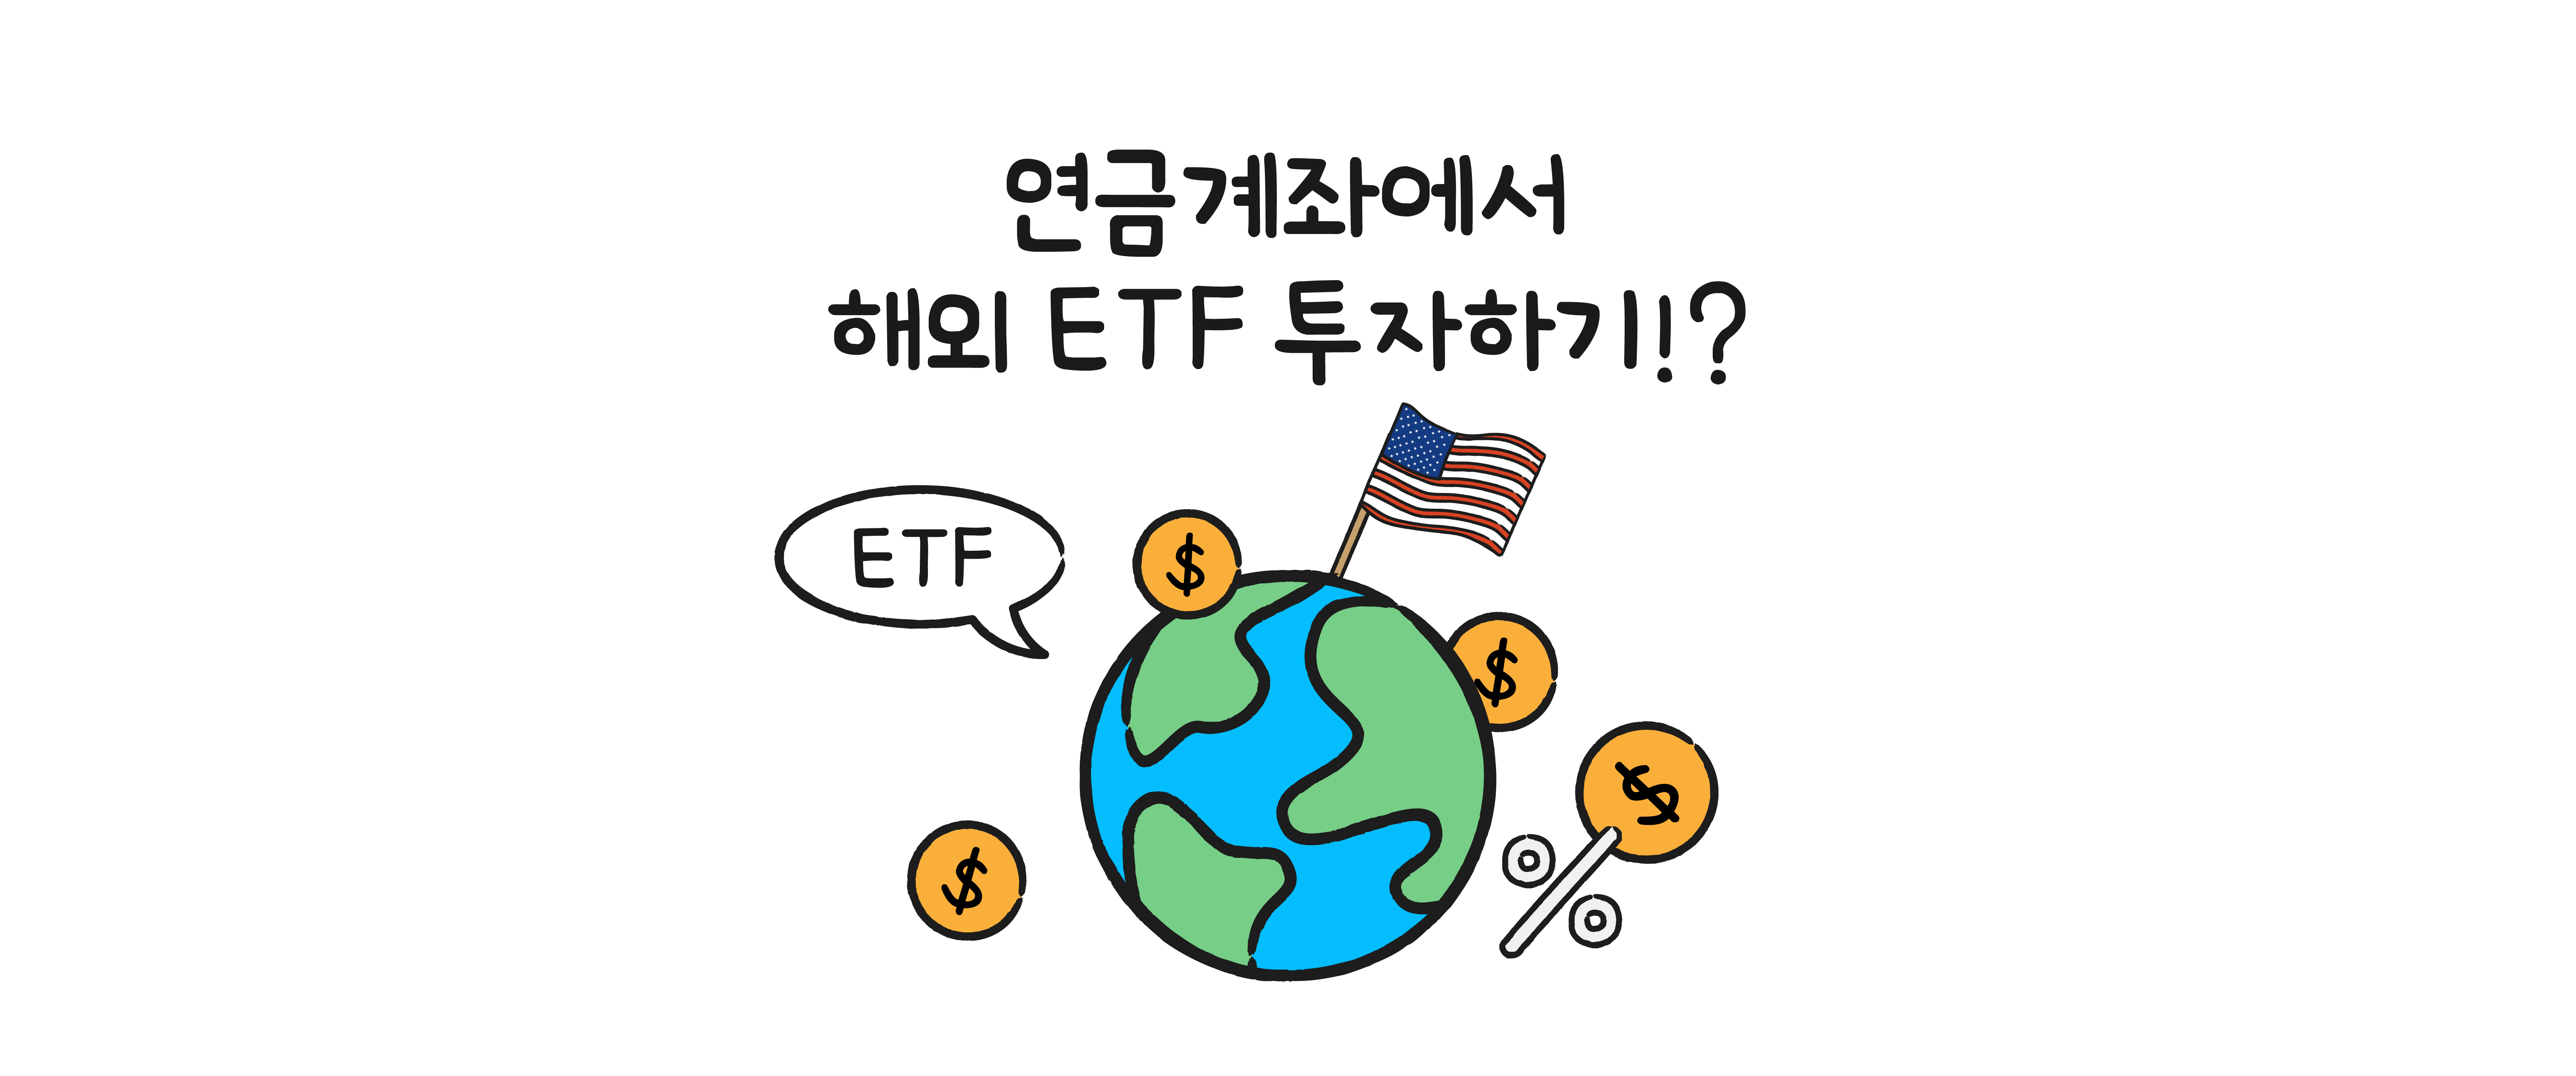 연금계좌에서 해외 ETF 투자하기?! – 초코Talk 4편